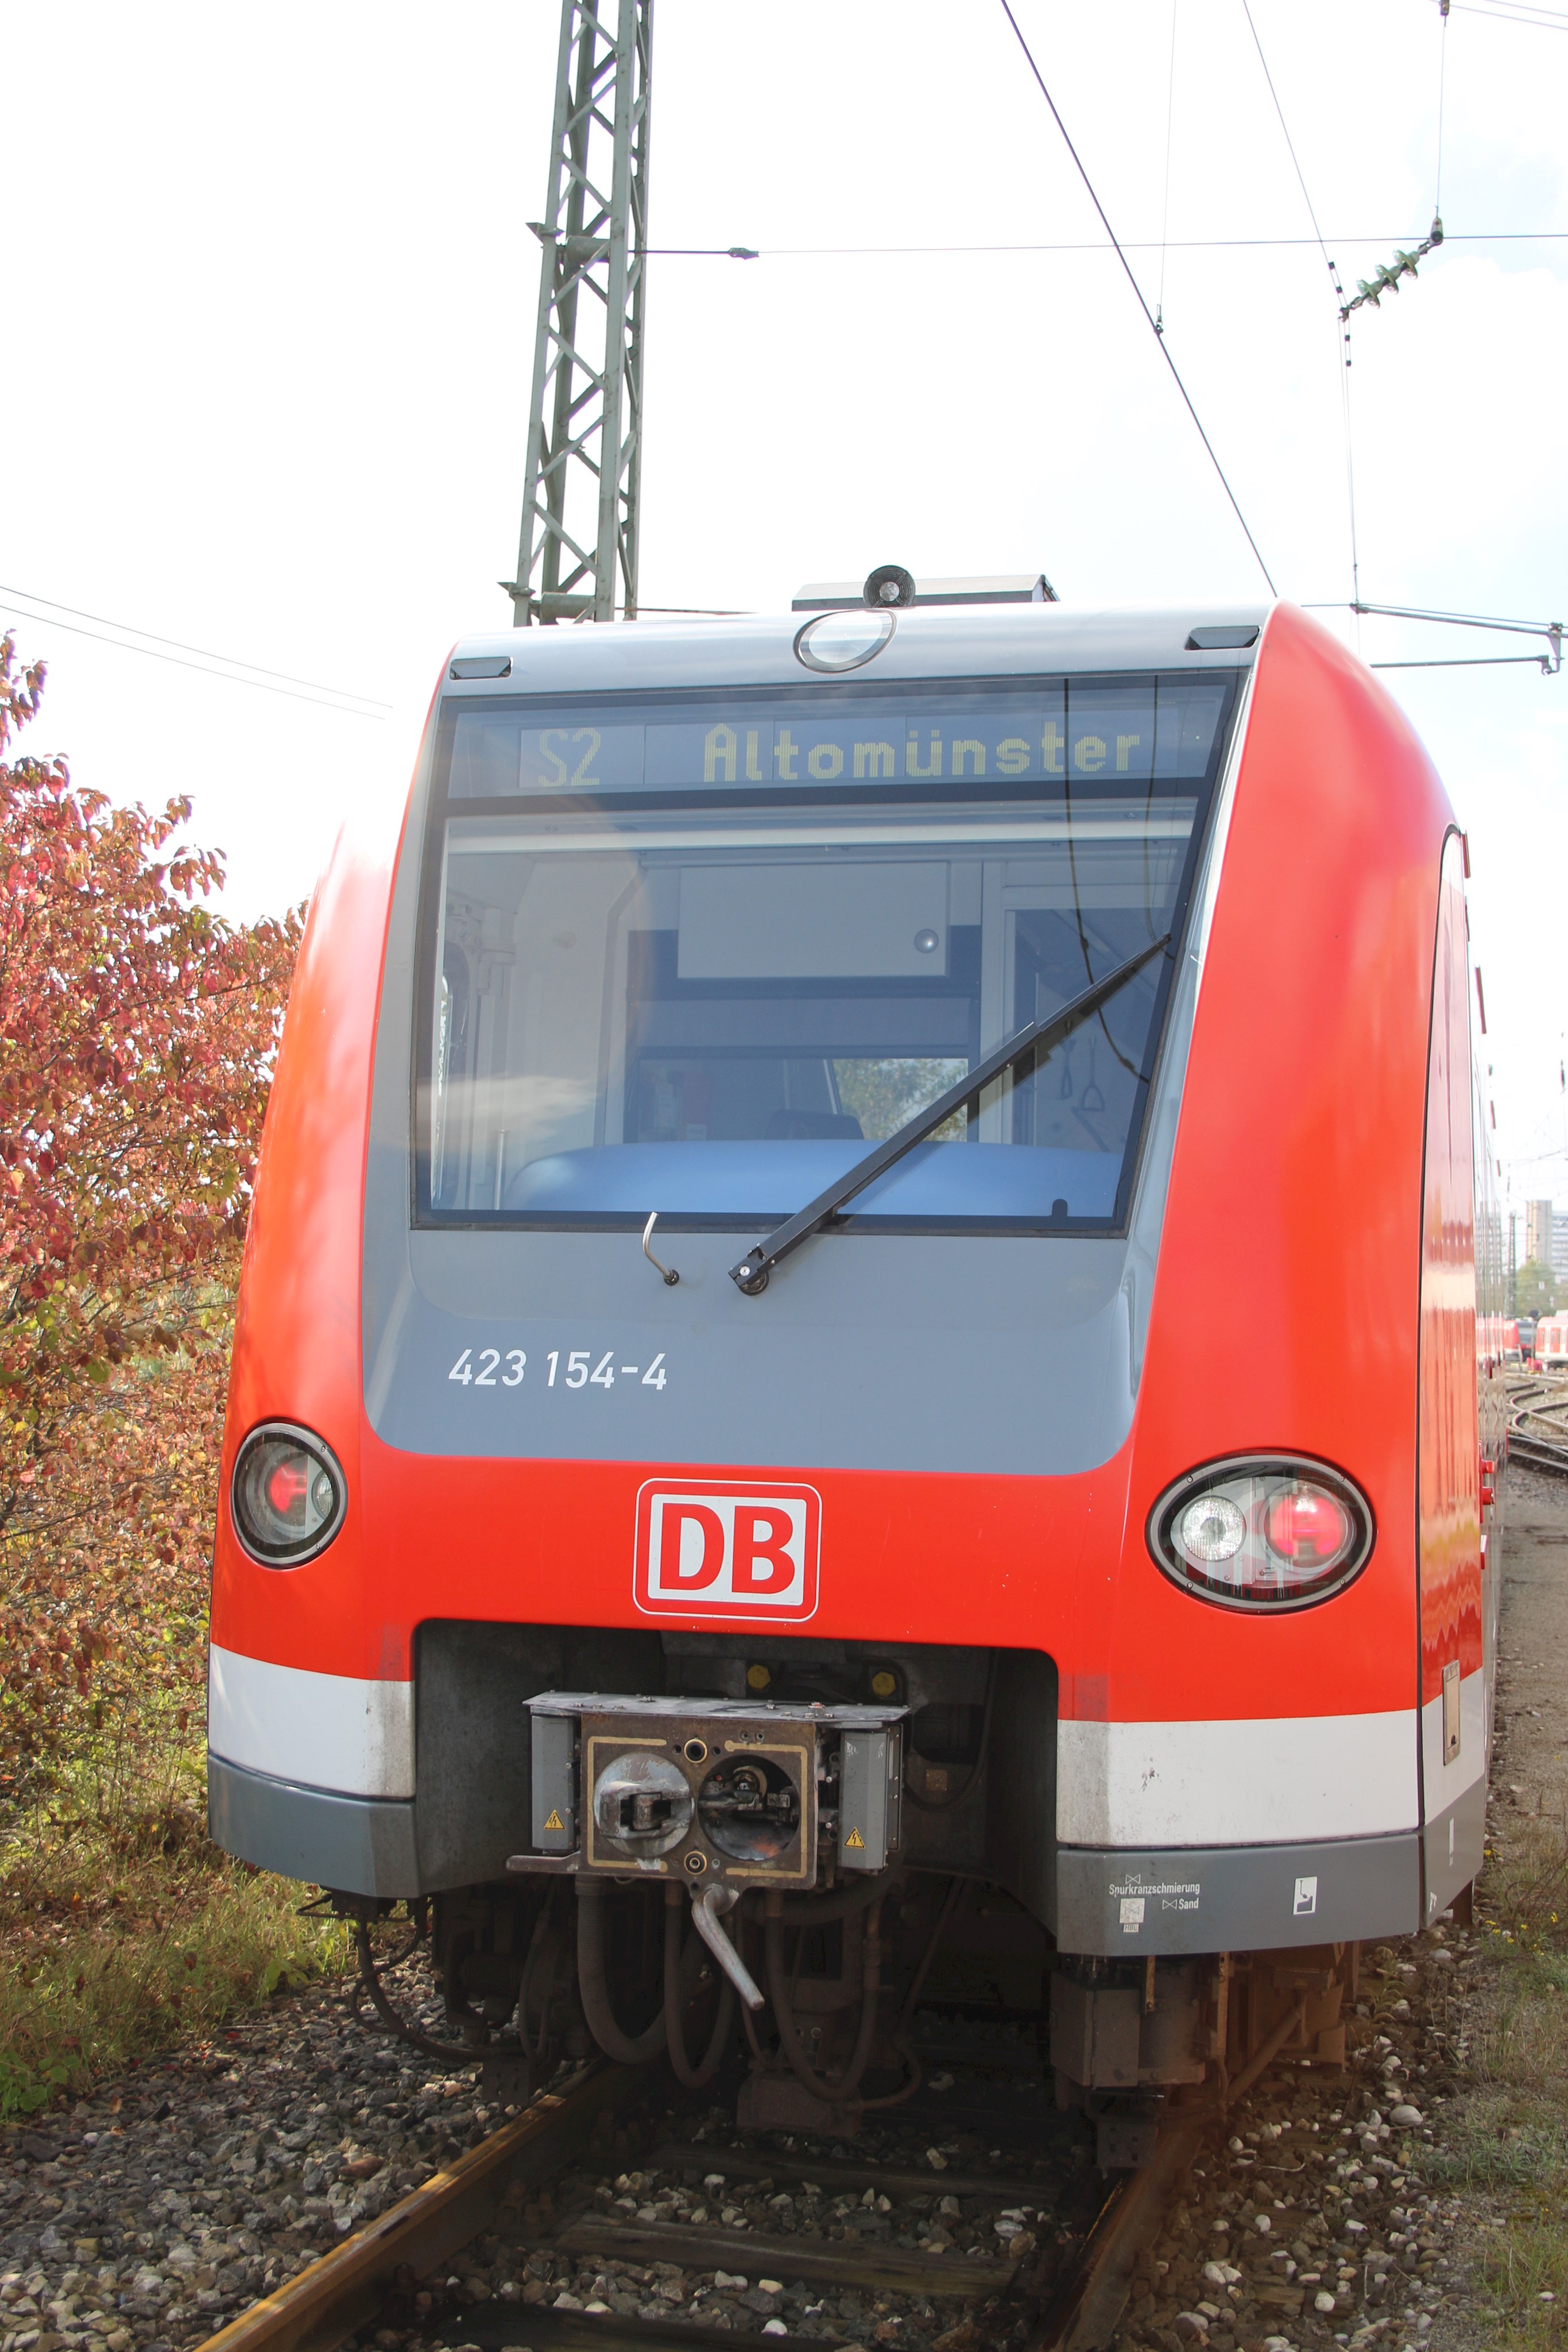 Foto der S-Bahn S2 Altomünster - München